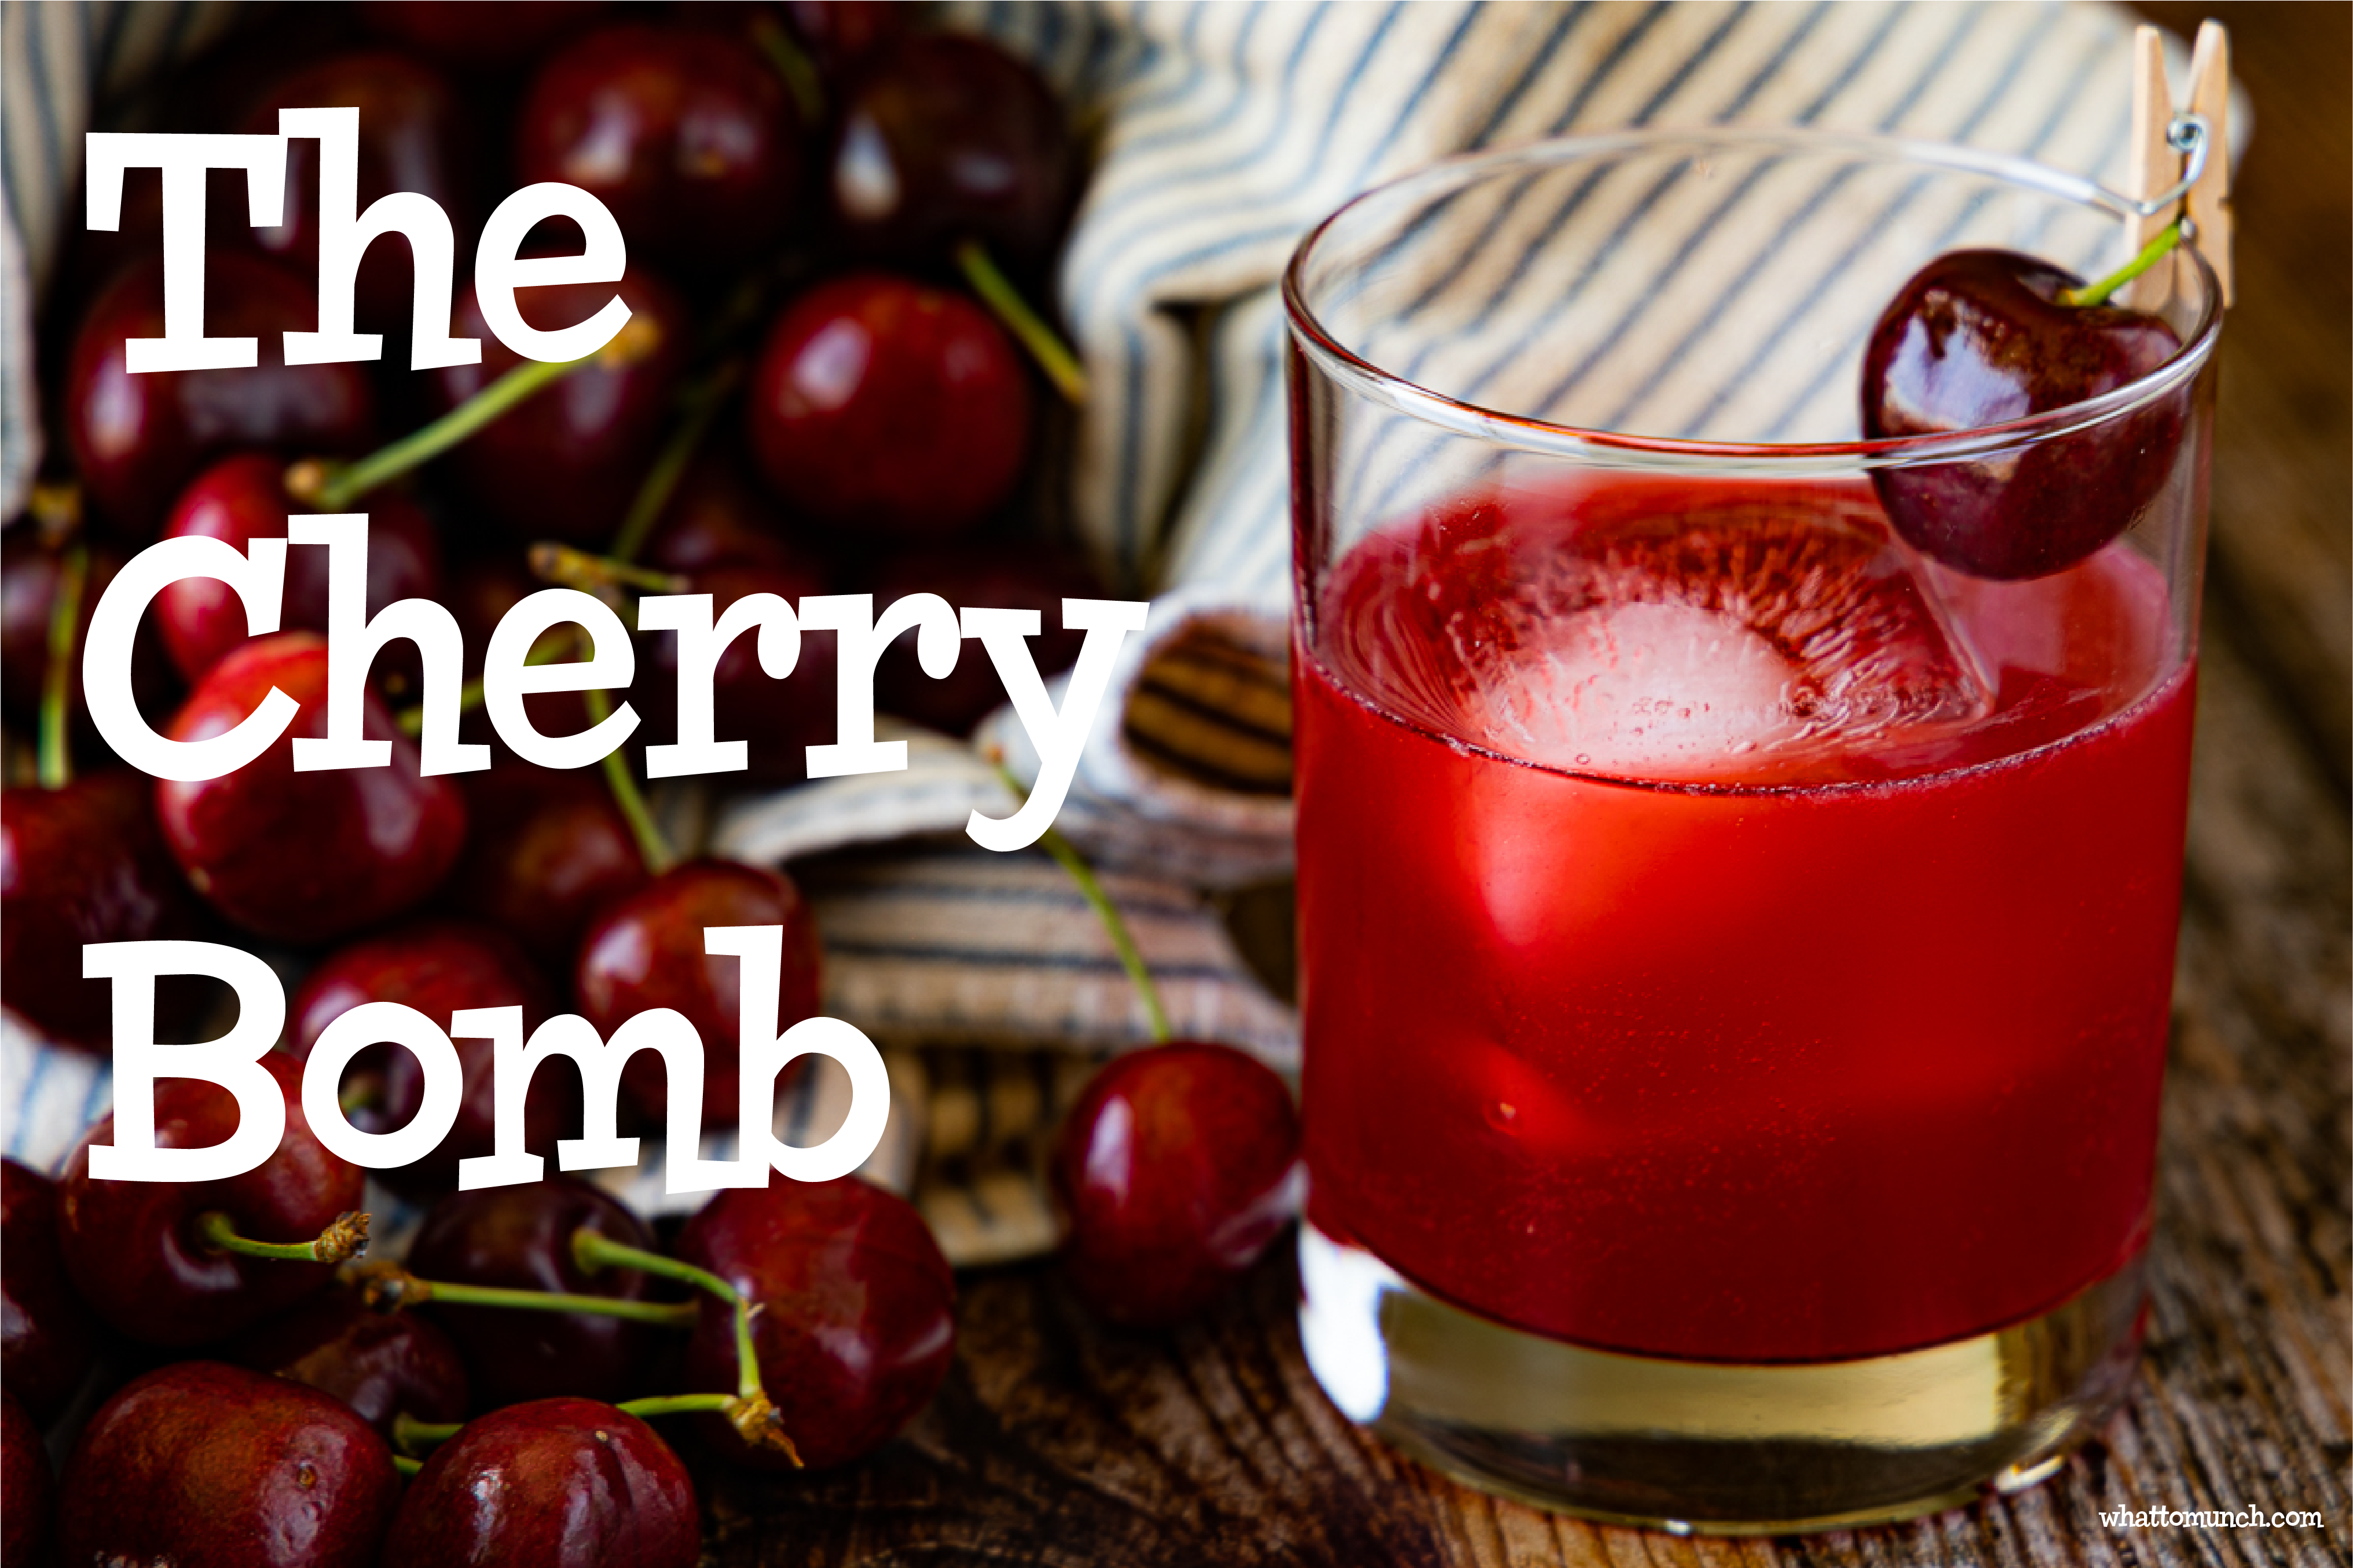 The Cherry Bomb